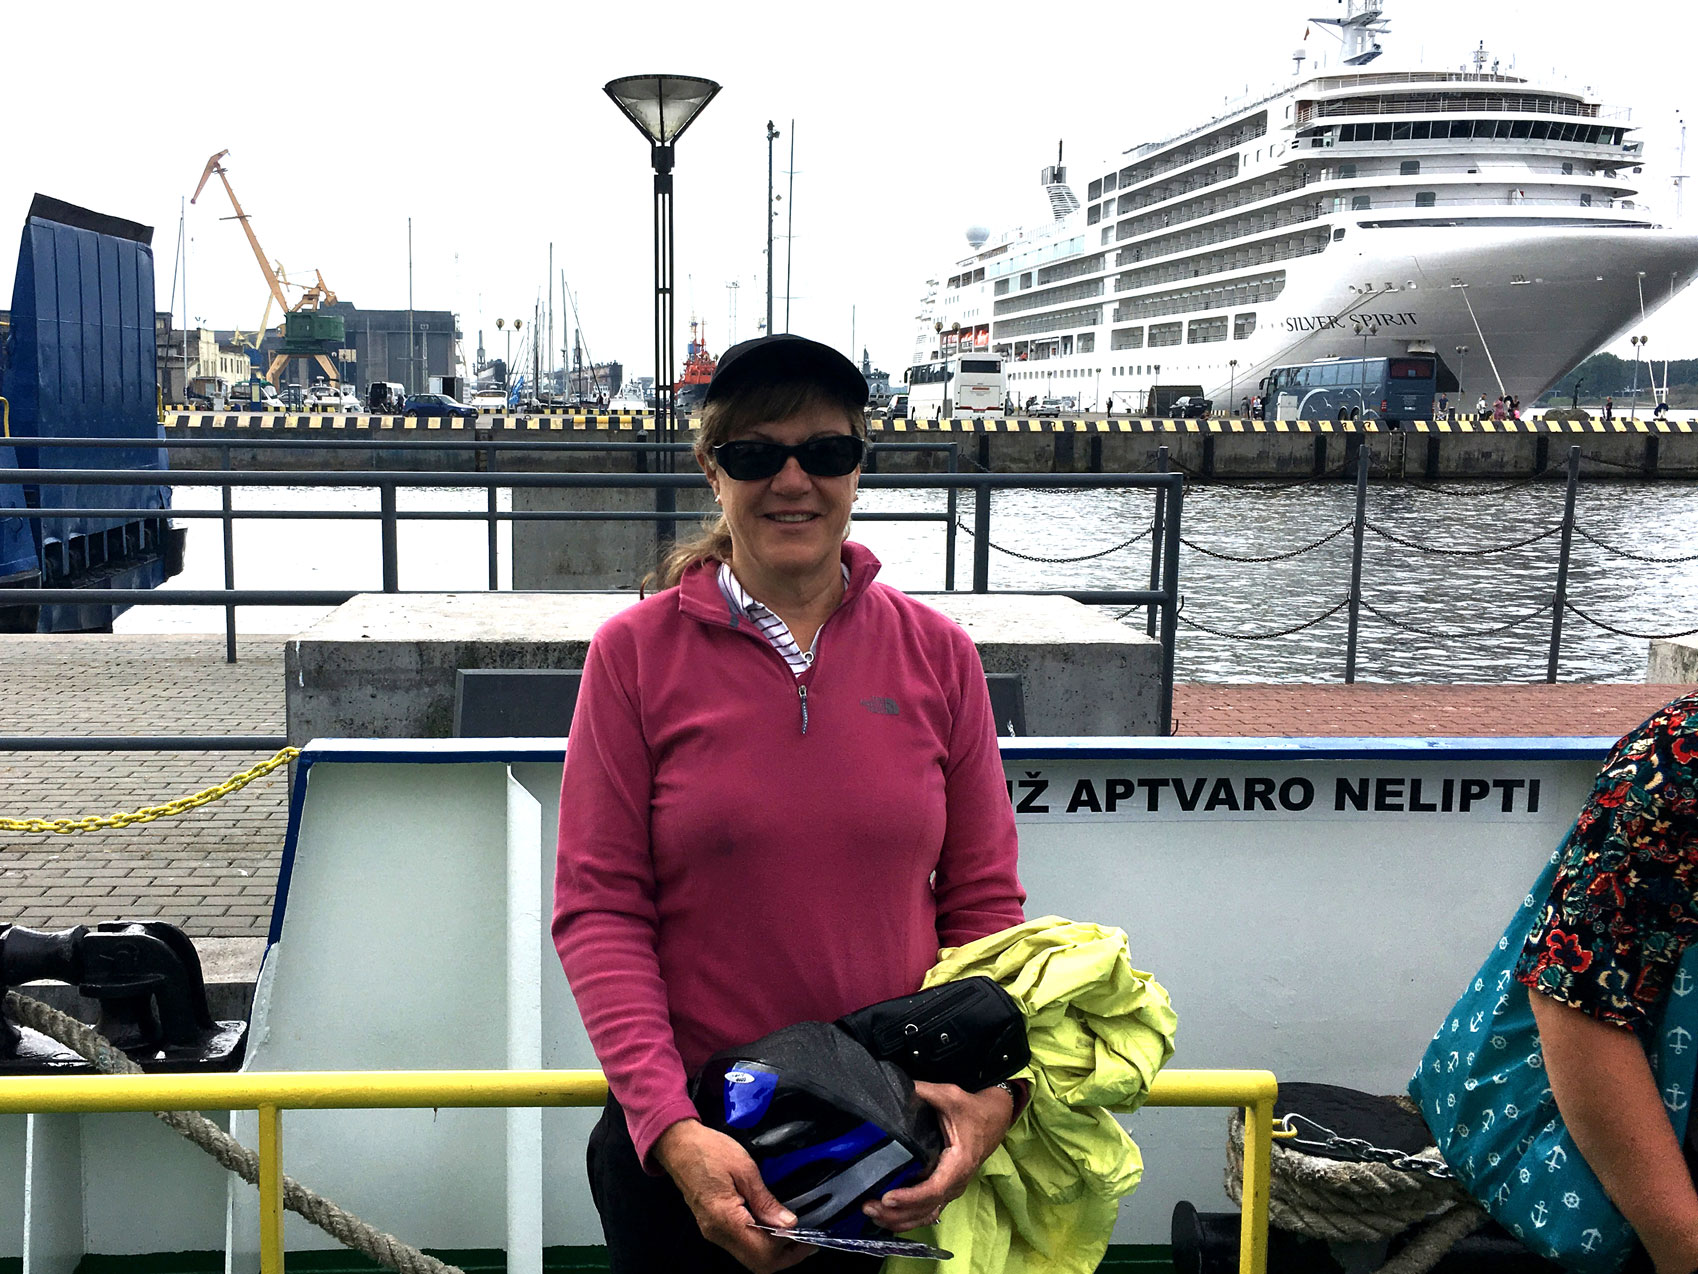 Klaipeda Ferry